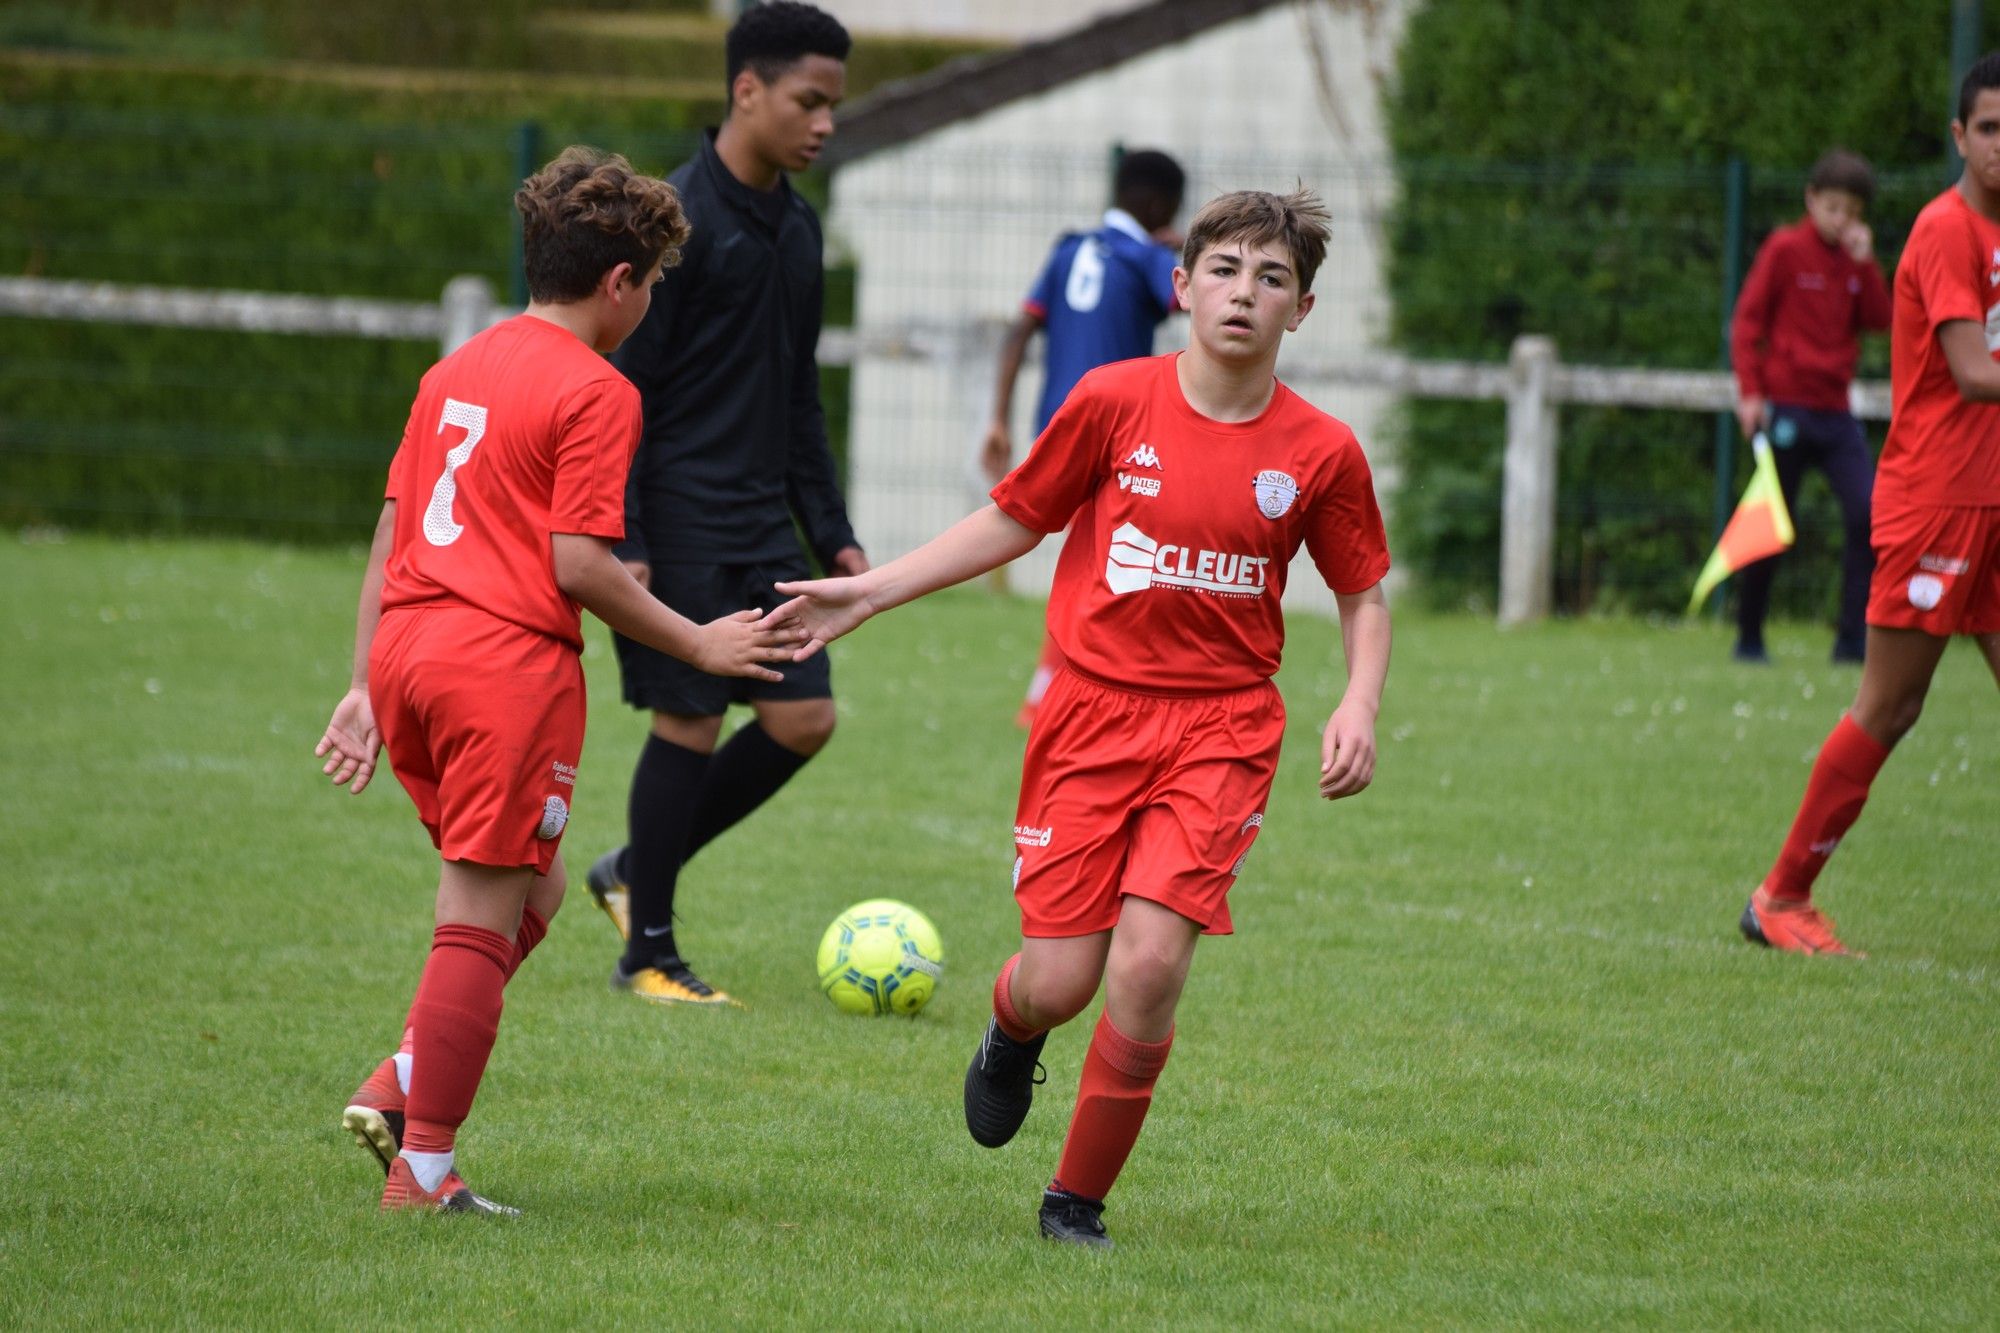 #Info Beauvais recrute des joueurs U14